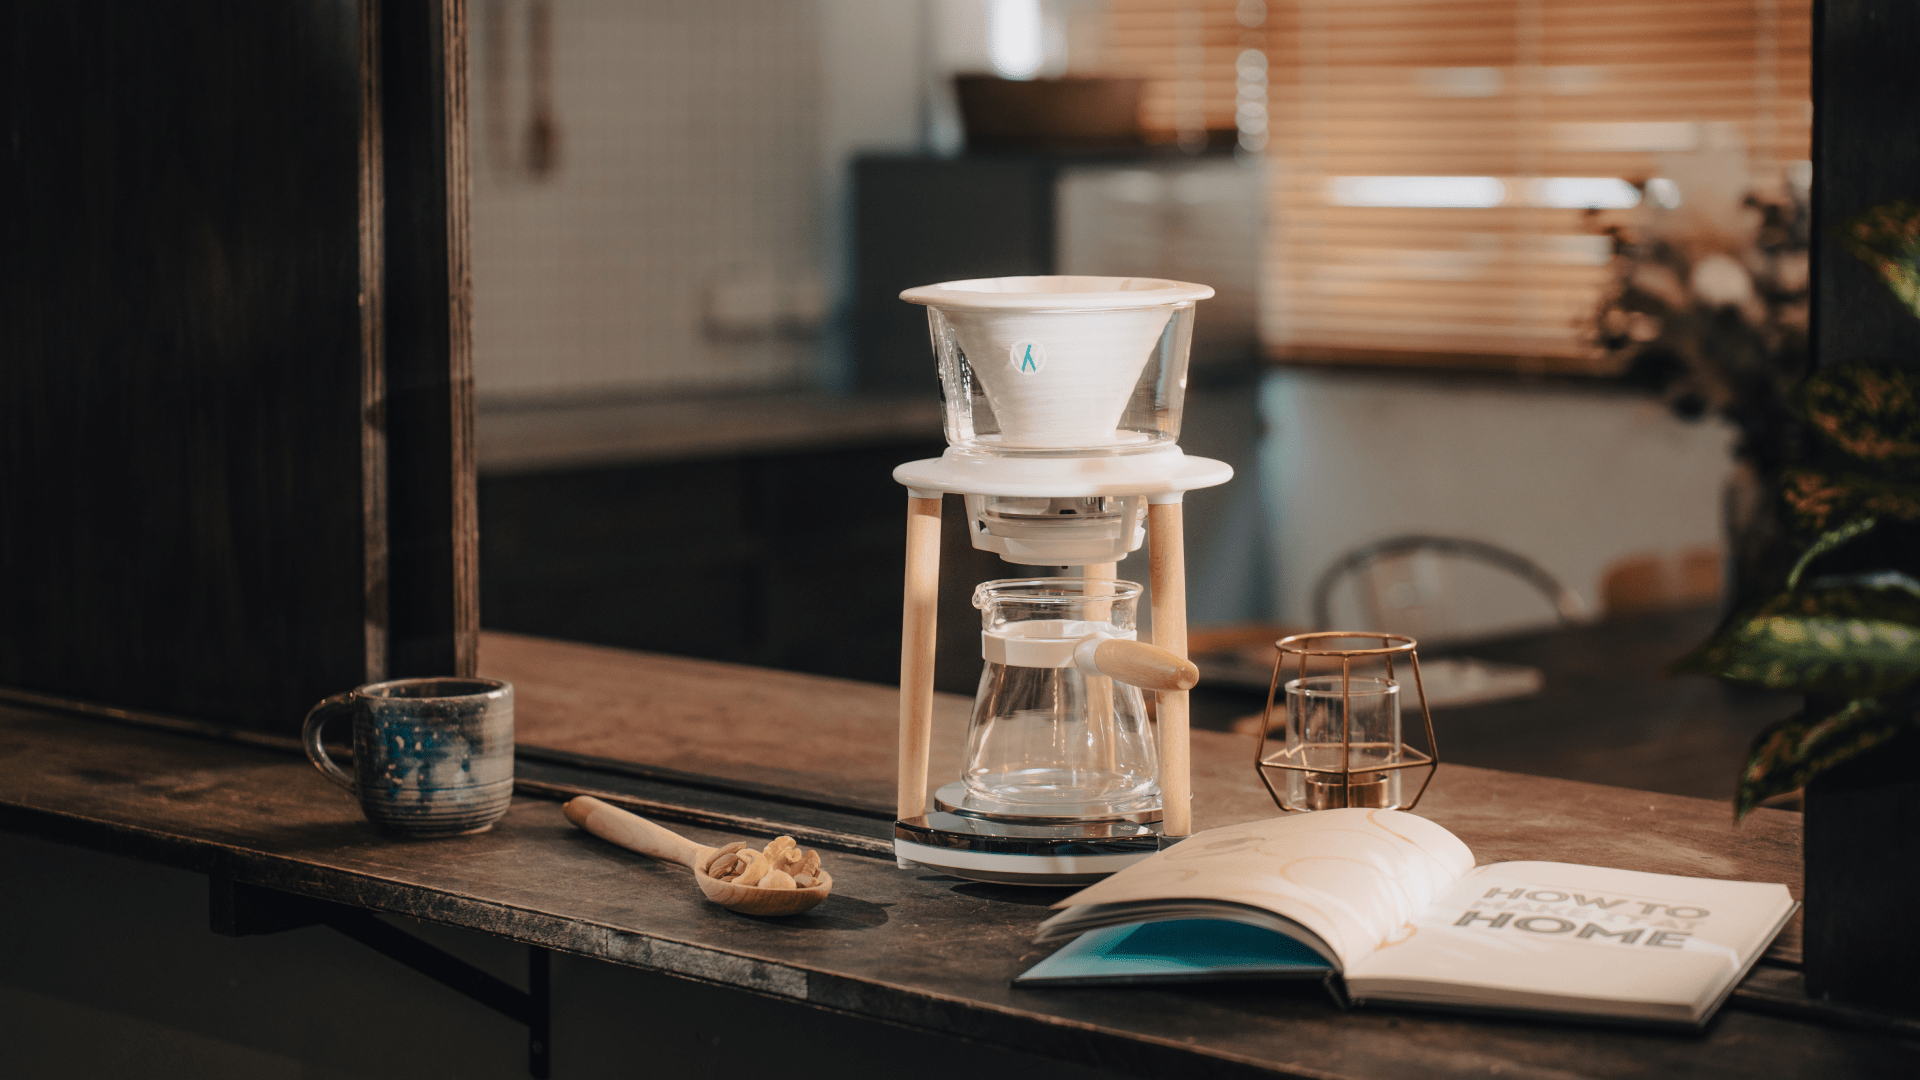 WABILOGIC JAPAN Senz V スマート ハンドドリップ コーヒー デバイス 今日からあなたもホームバリスタに Smart Pour Over Coffee Device デザイン 五感 コーヒー ハンドドリップ